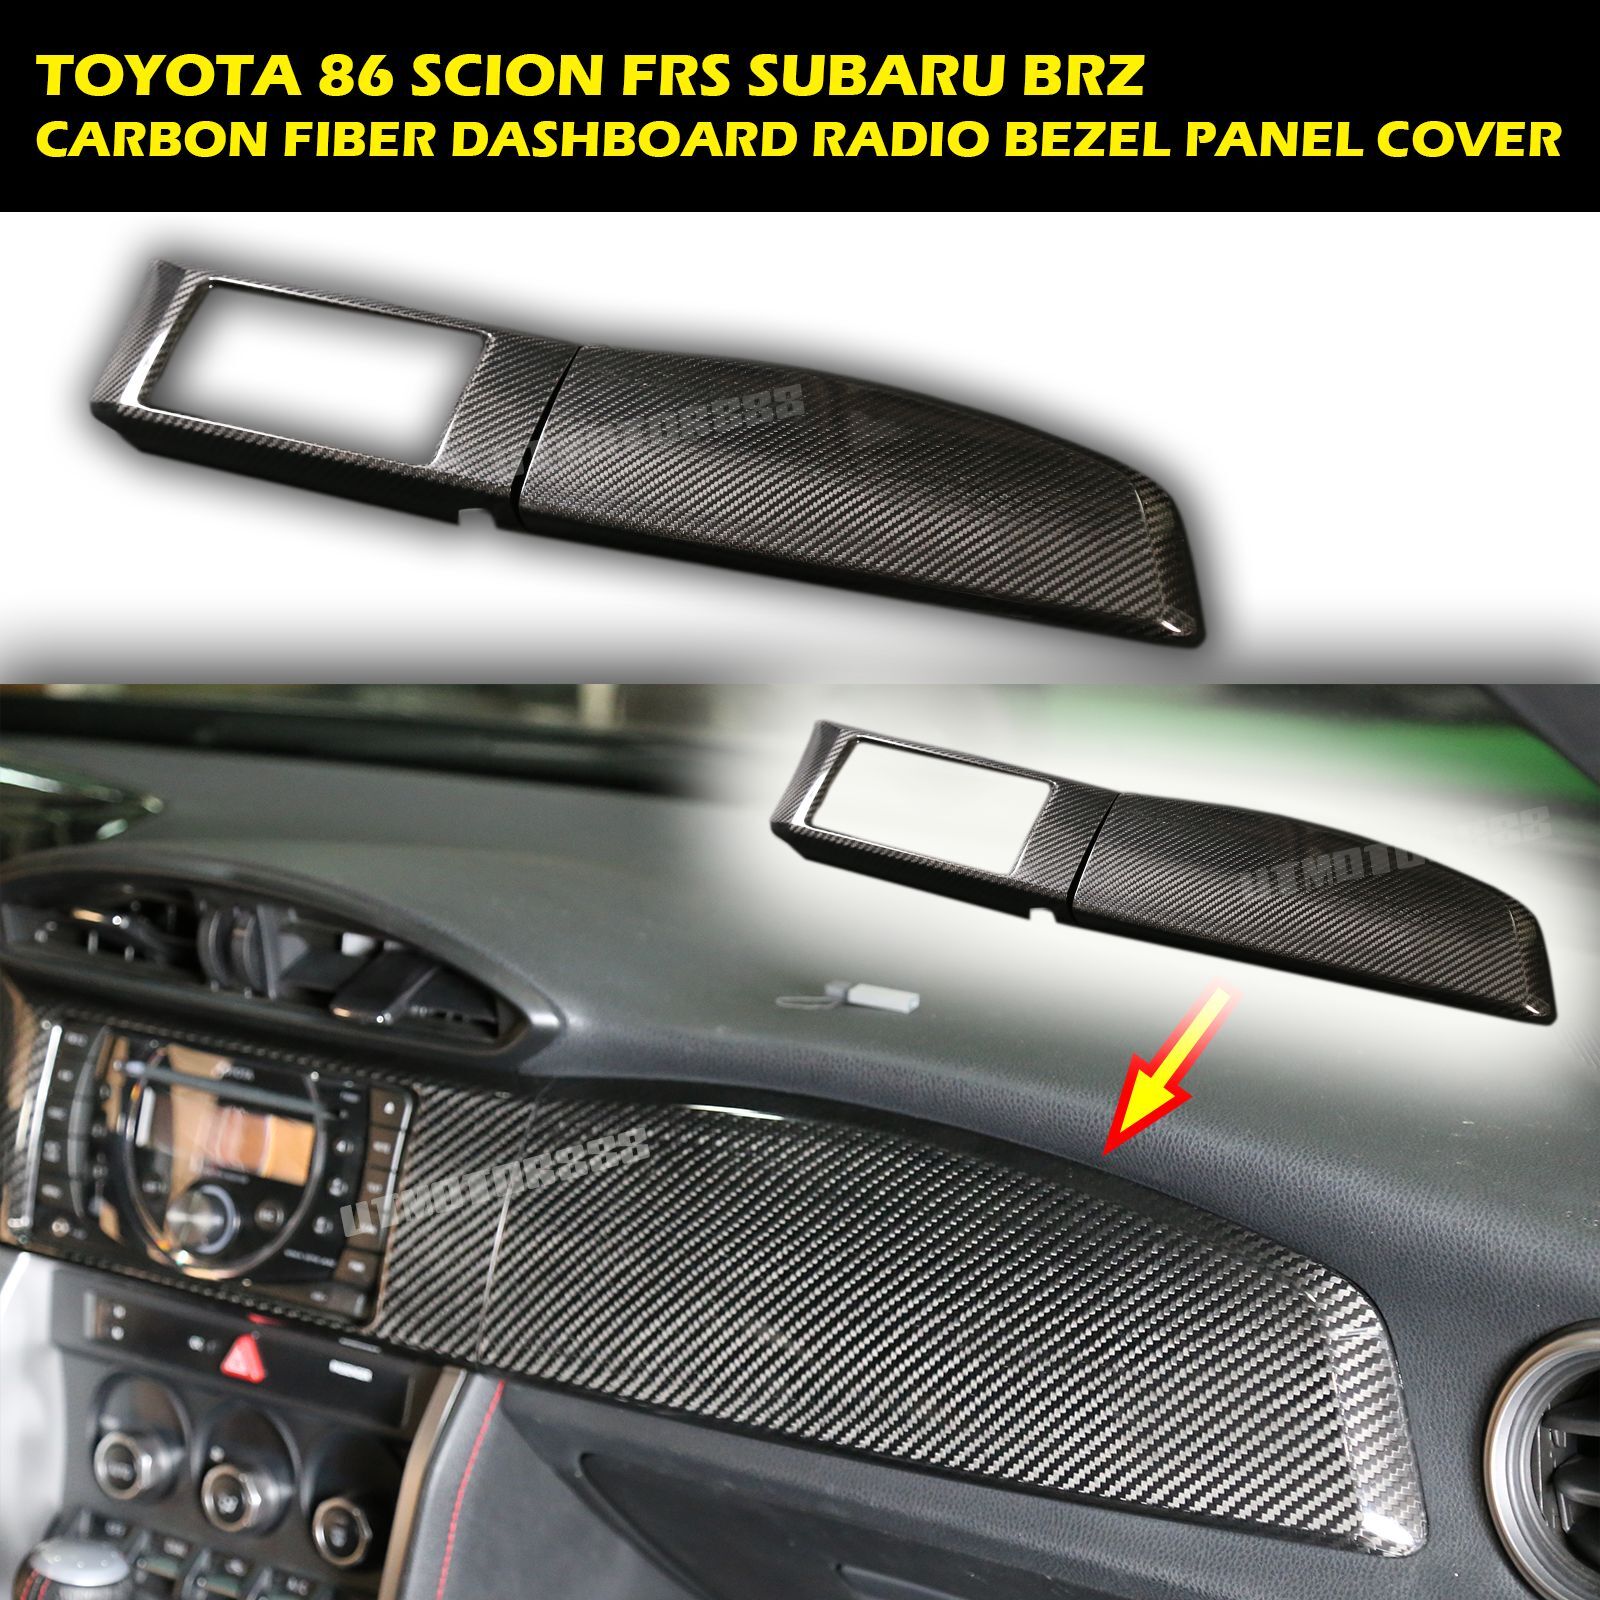  Dashboard Cover 2PCS-LHD Carbon Fiber Fits 13 14 15 86 Scion FRS Subaru BRZ